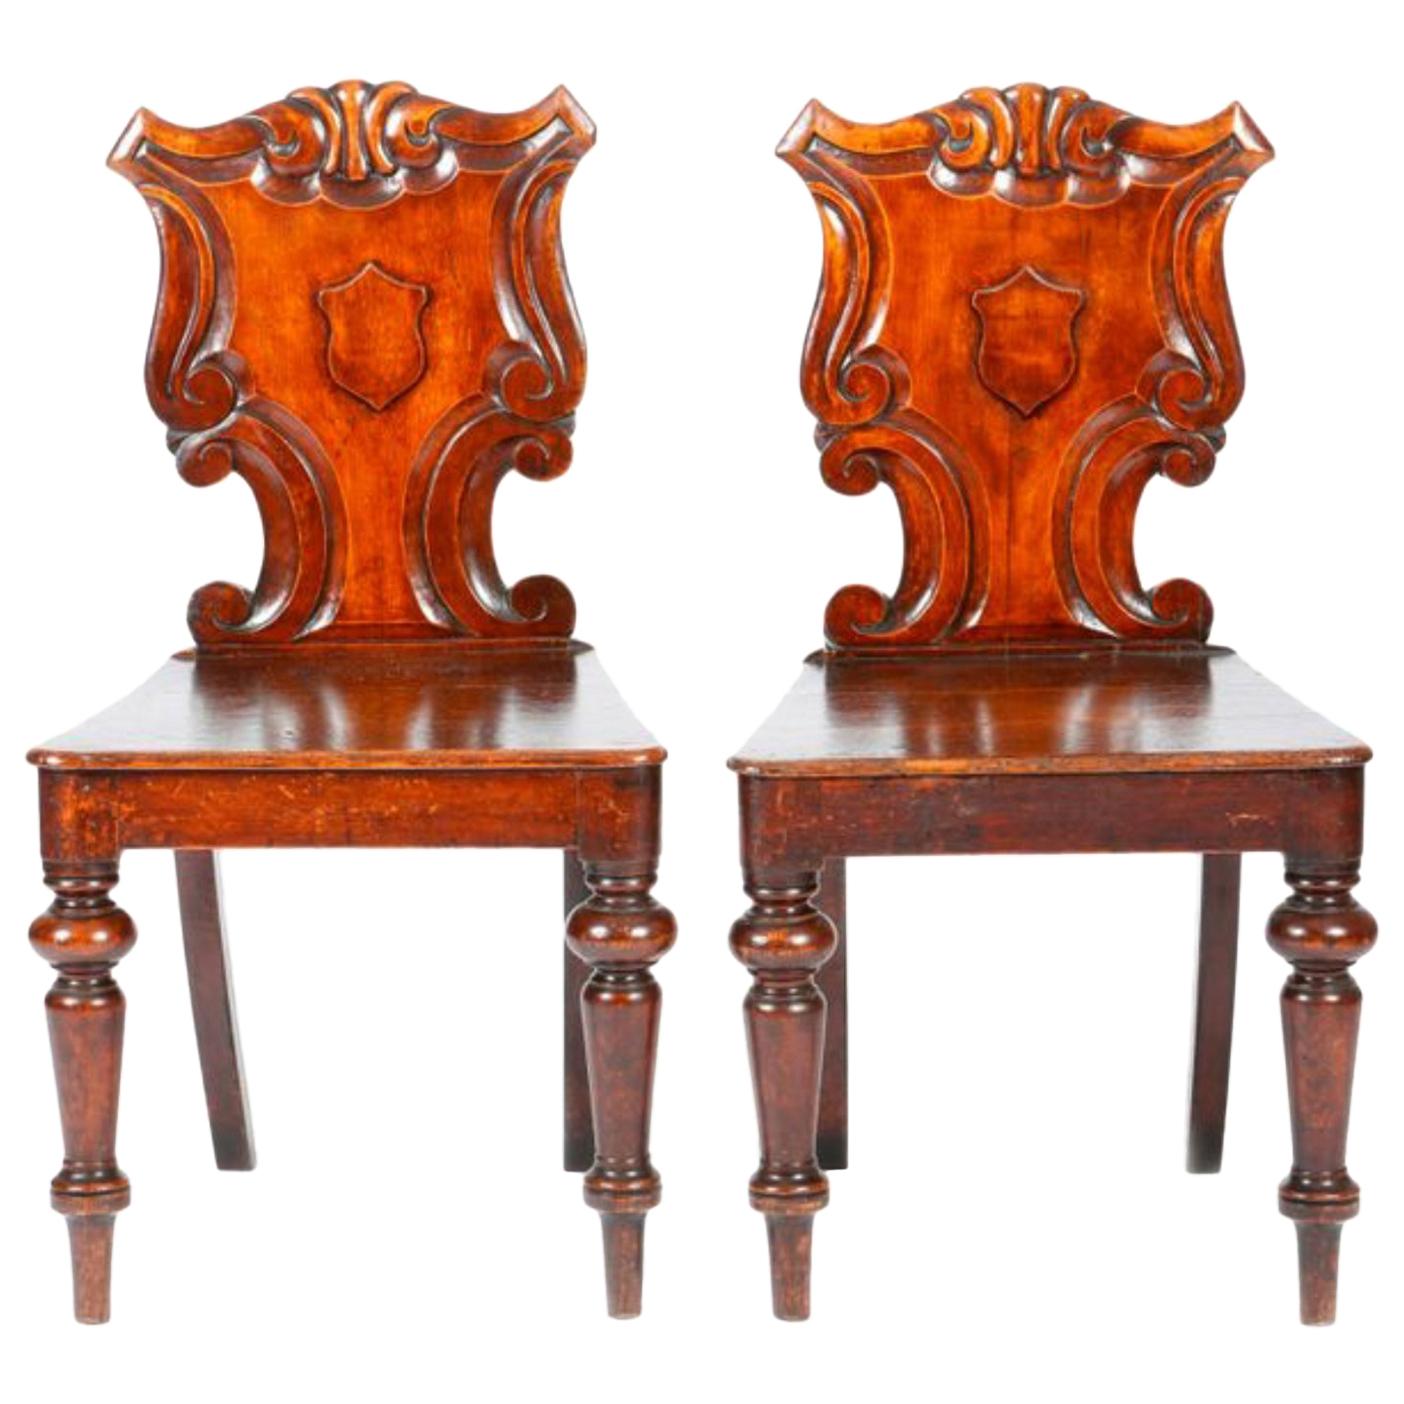 Englische viktorianische, handgeschnitzte Eichenholzstühle aus dem 19. Jahrhundert